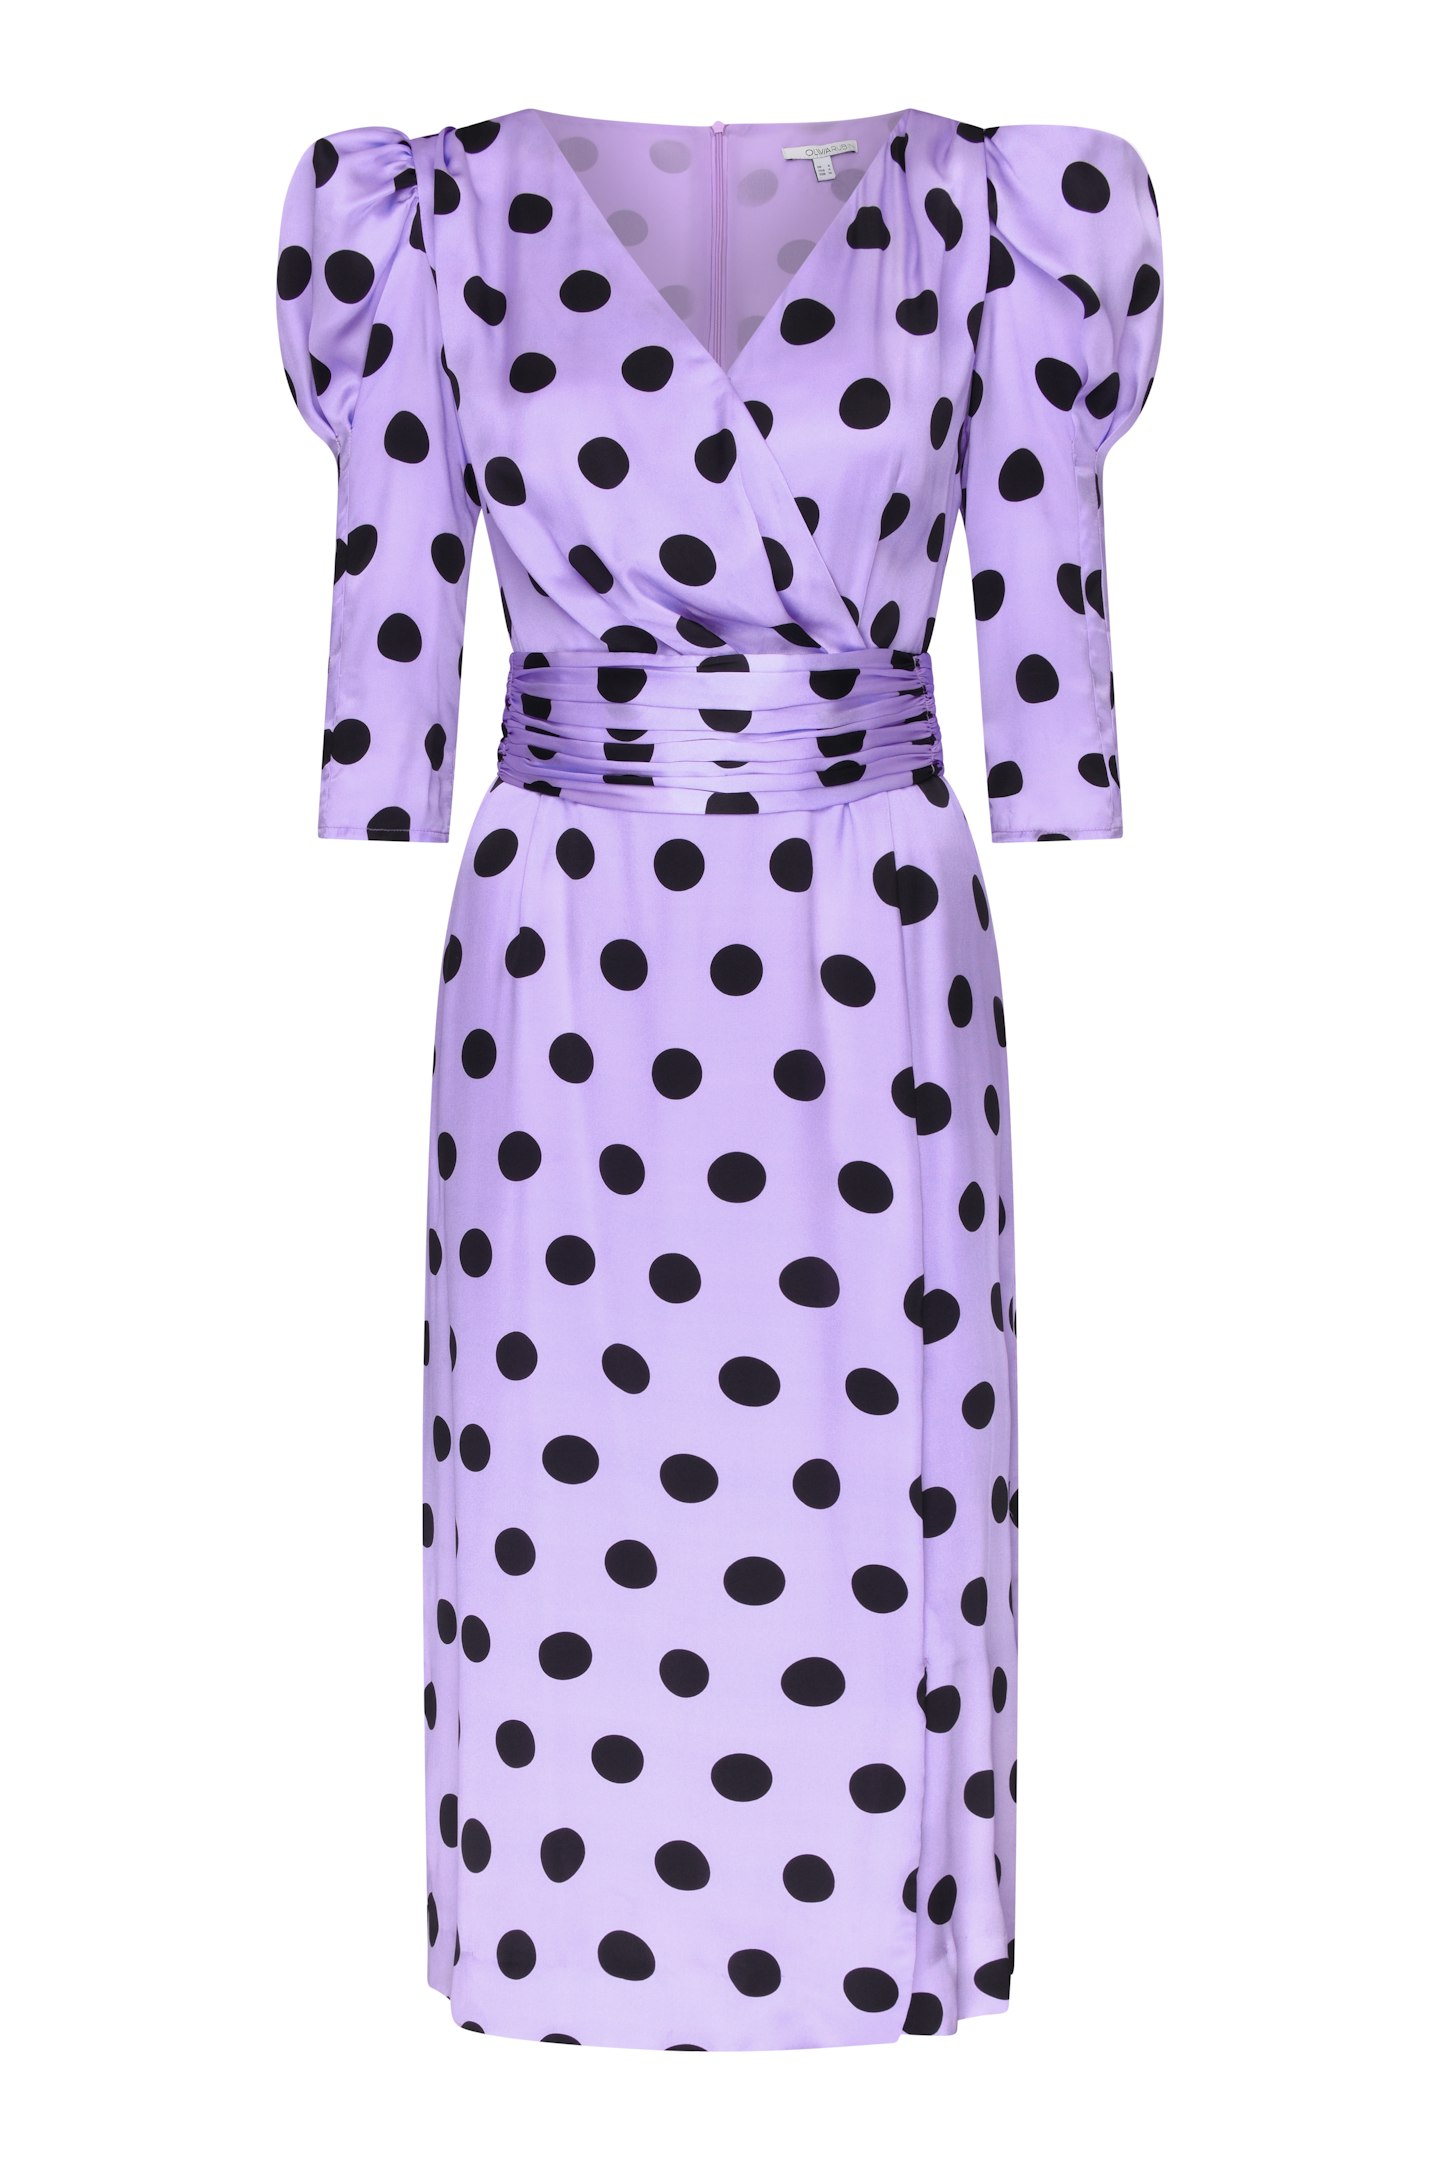 Silk Polka Dot Dress, £420